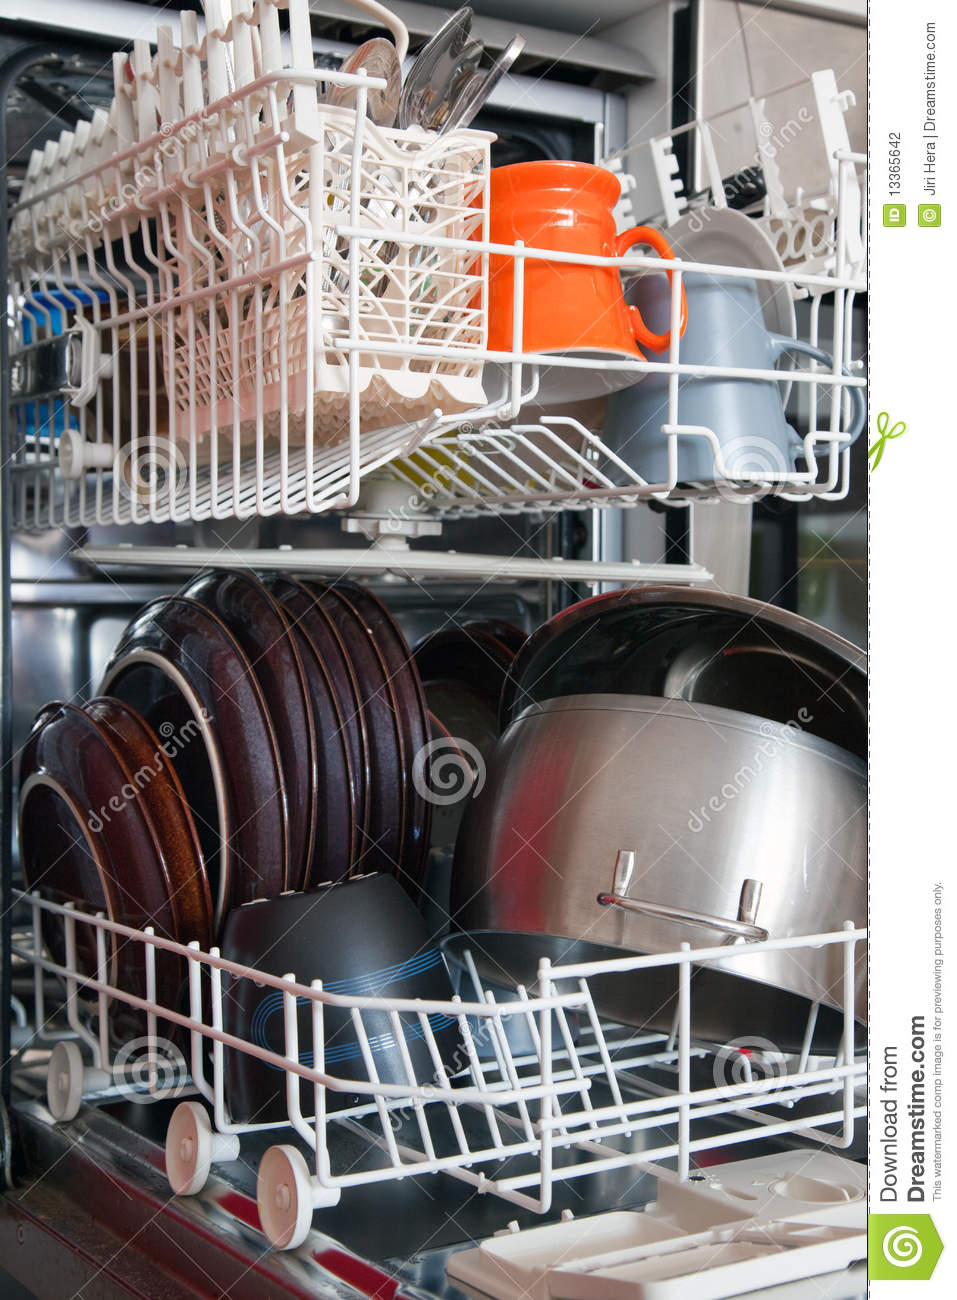 Open Dishwasher Stock Photography   Image  13365642